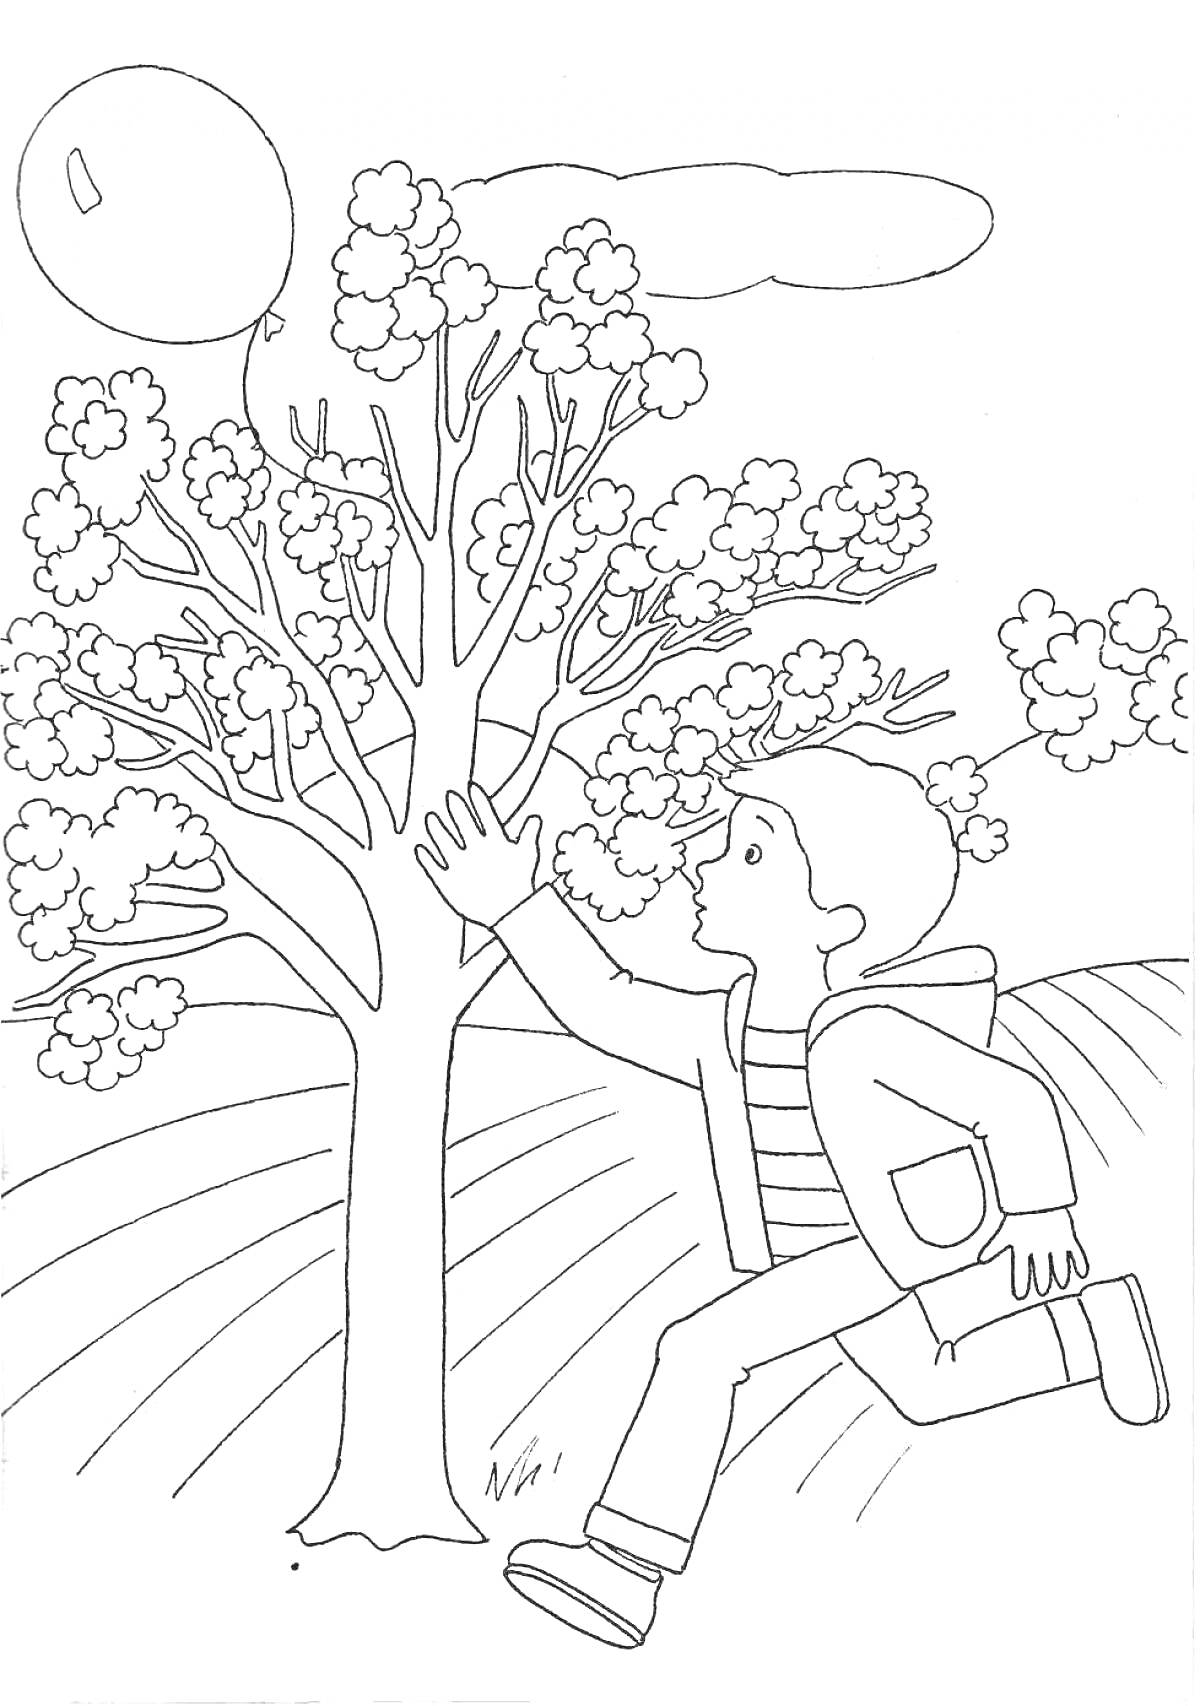 Мальчик в майке и куртке, бежит к дереву с листвой, с воздушным шаром в небе и облаками